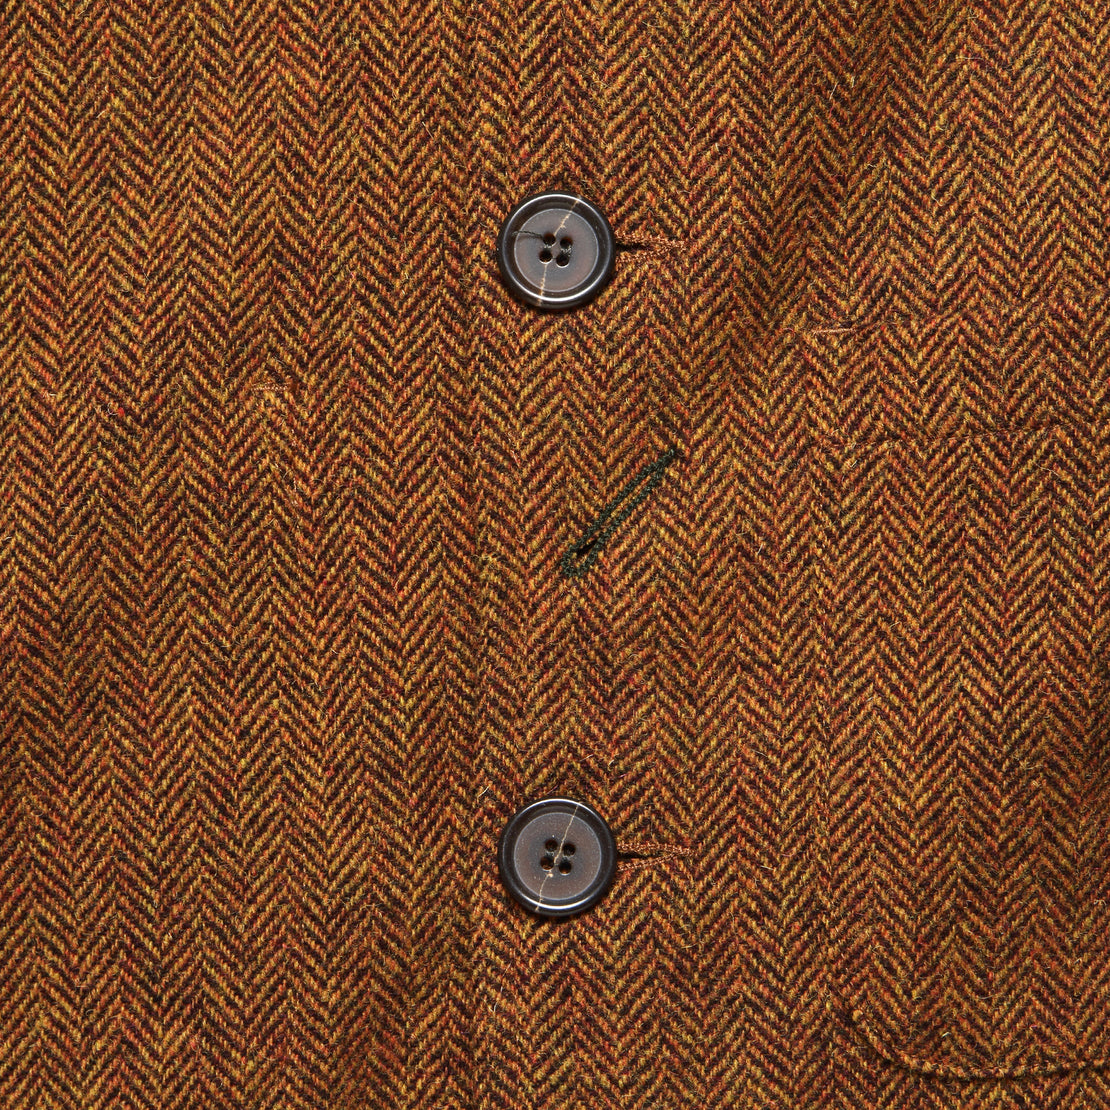 Simple Wool Bakers Jacket - Orange Herringbone - Universal Works - STAG Provisions - Outerwear - Coat / Jacket